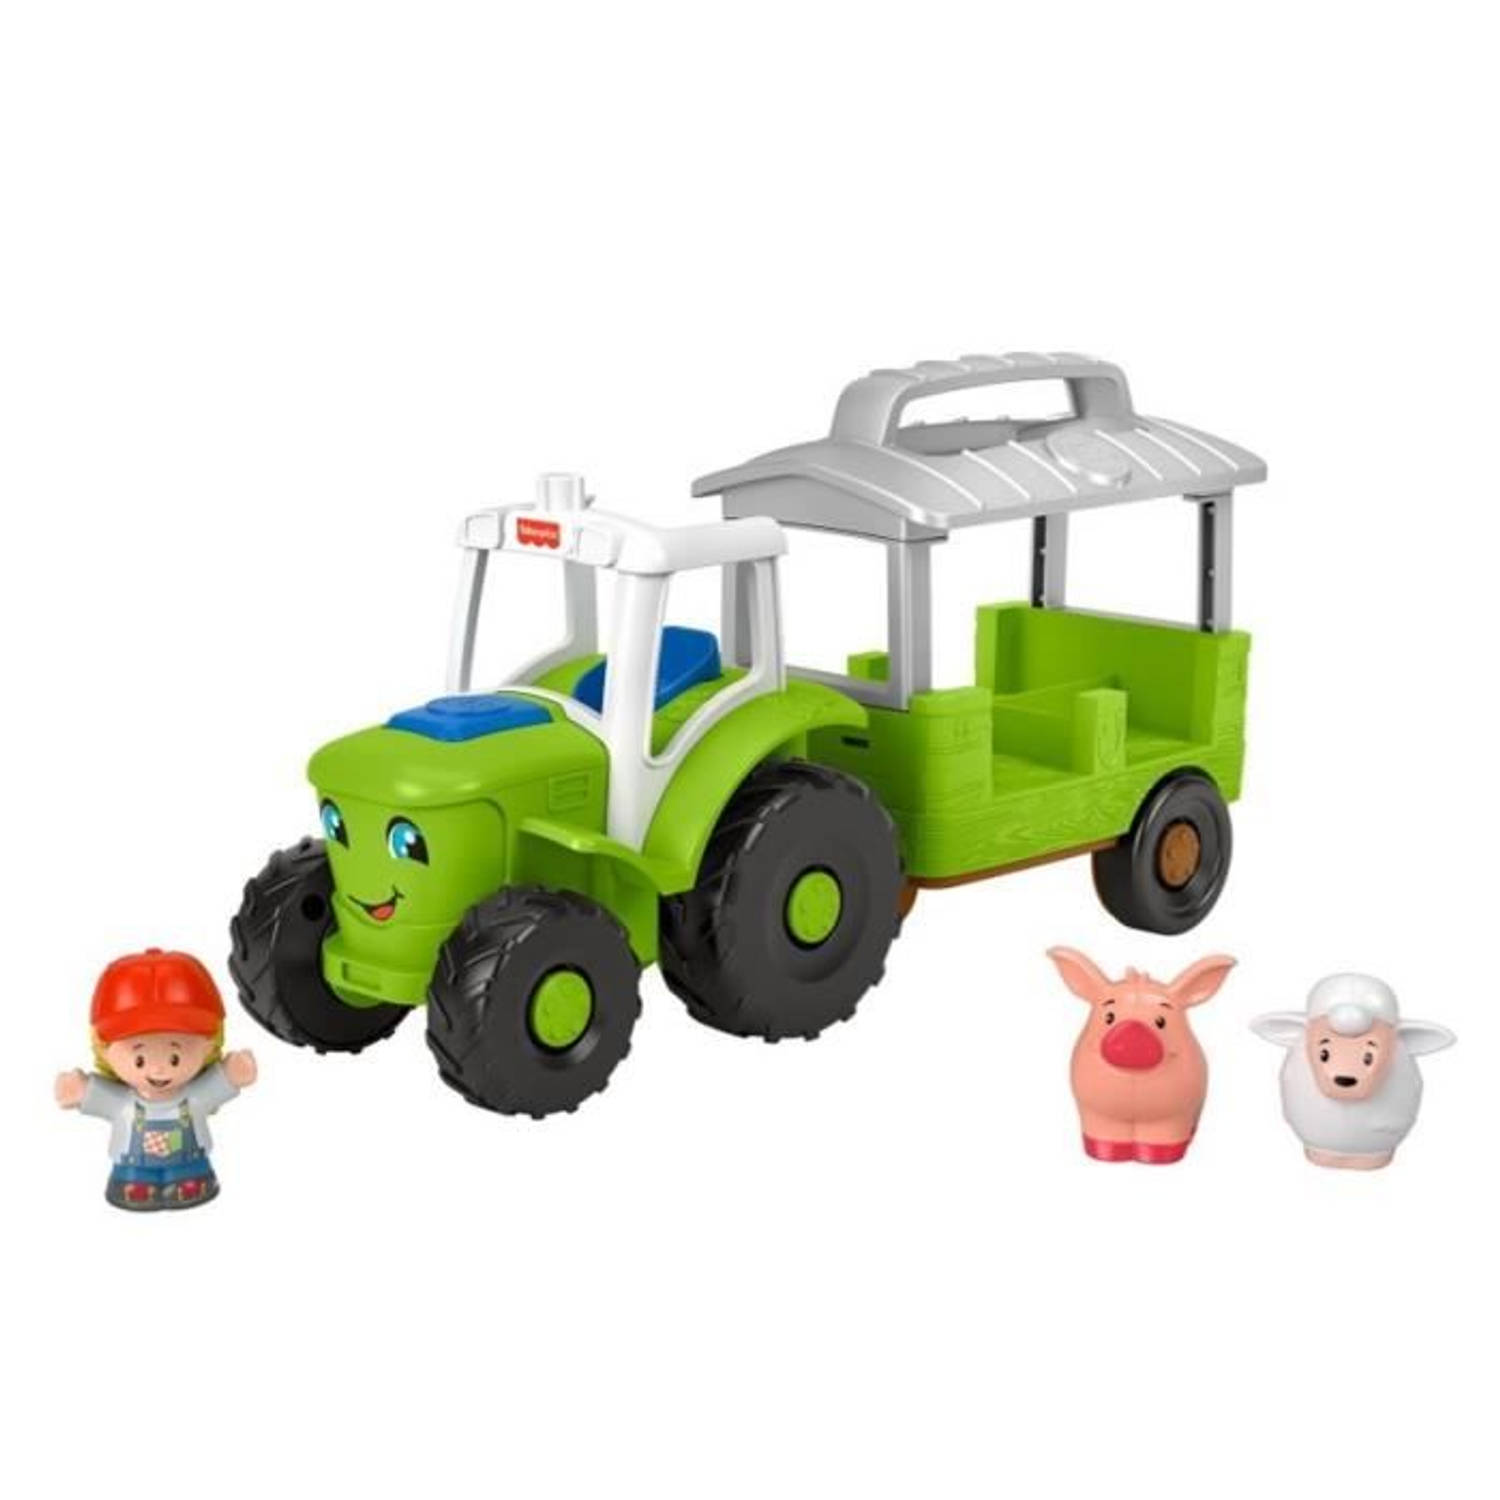 VISSERPRIJS Little People The Tractor - 12 maanden tot 5 jaar